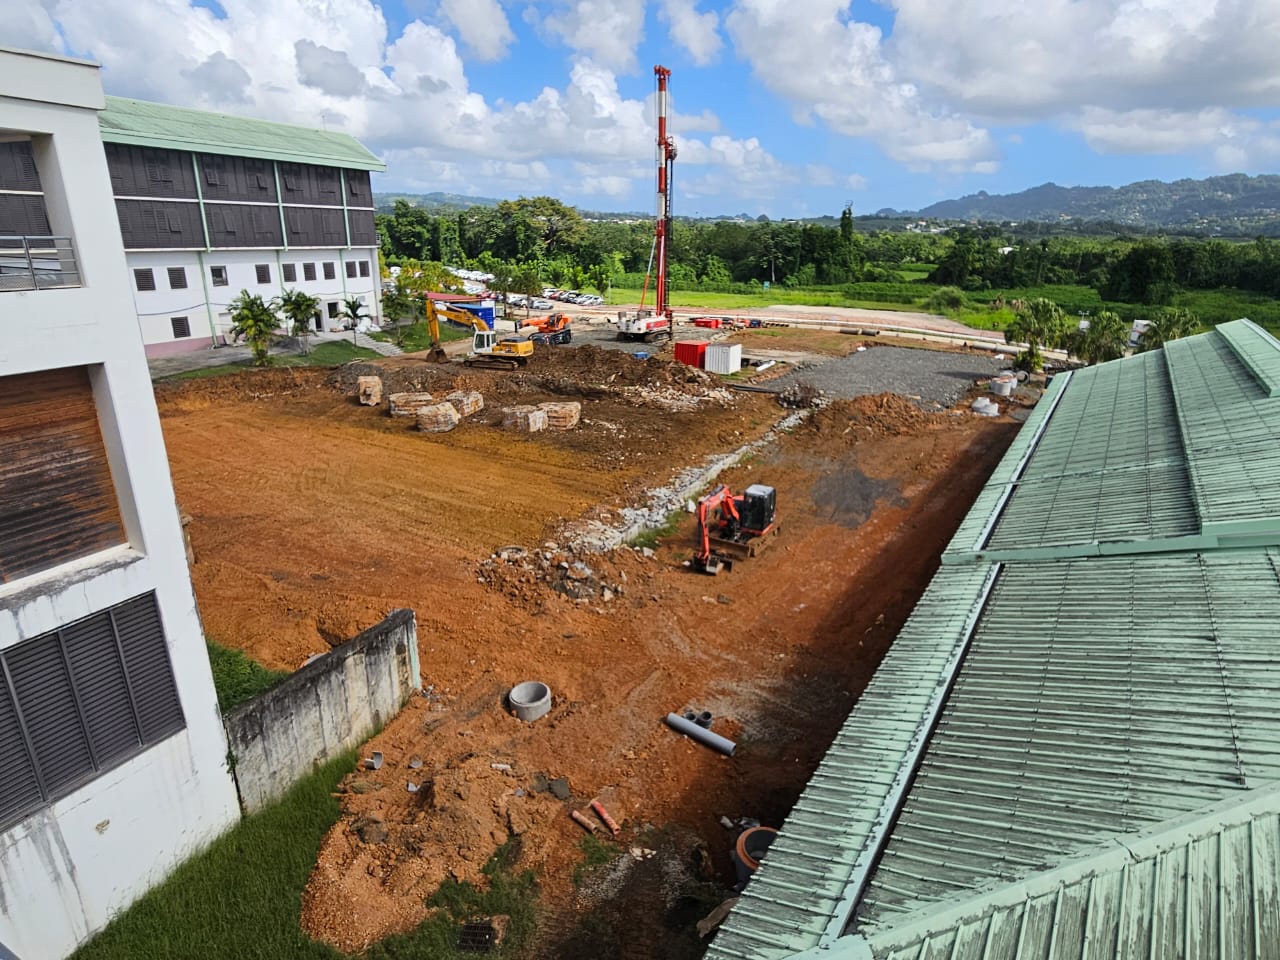     Le chantier d'extension de l'hôpital Maurice Despinoy est prêt à démarrer

